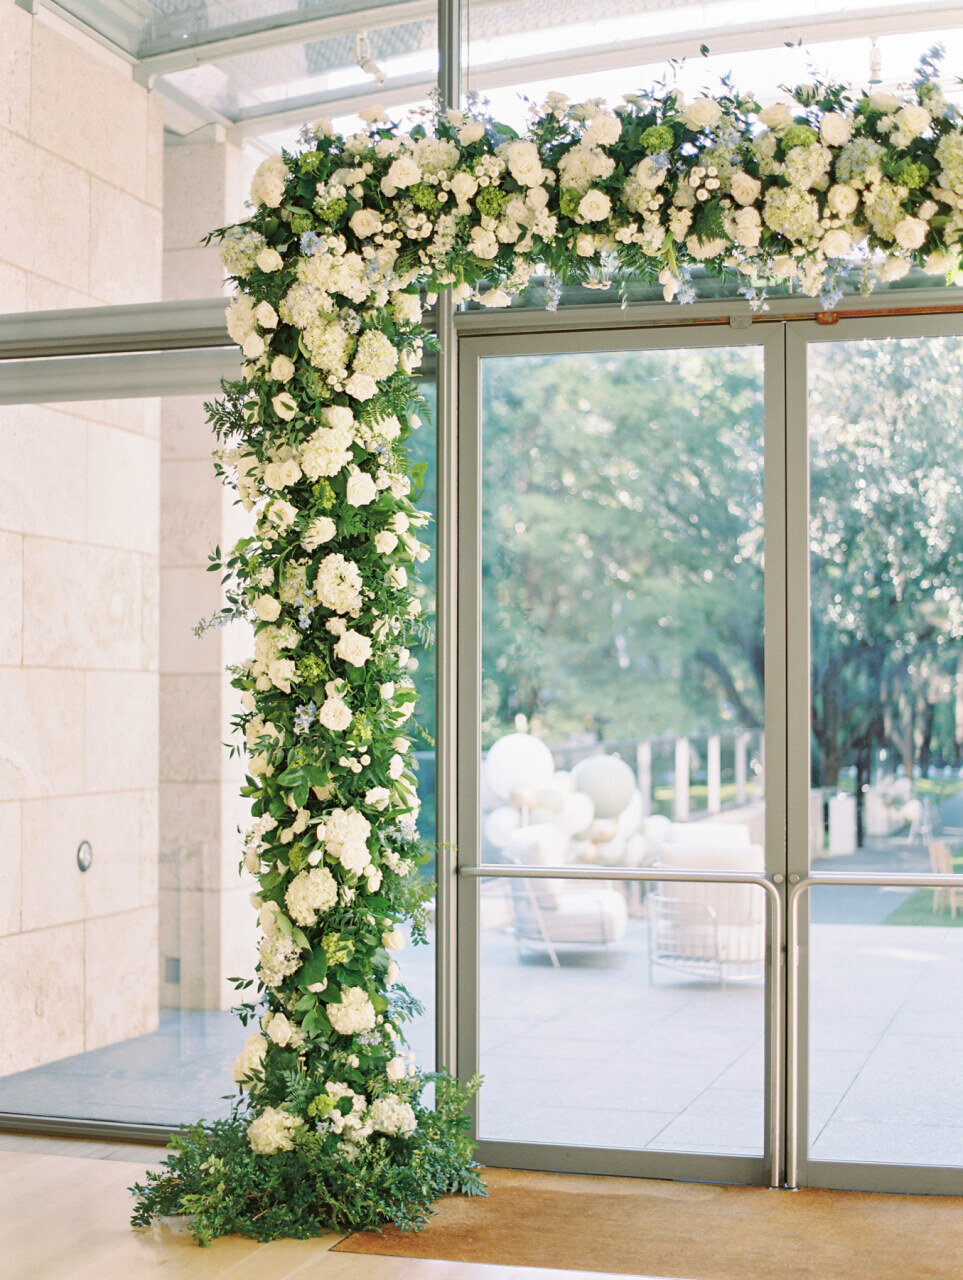 Portfolio | Wedding Floral Designs by Petals Couture